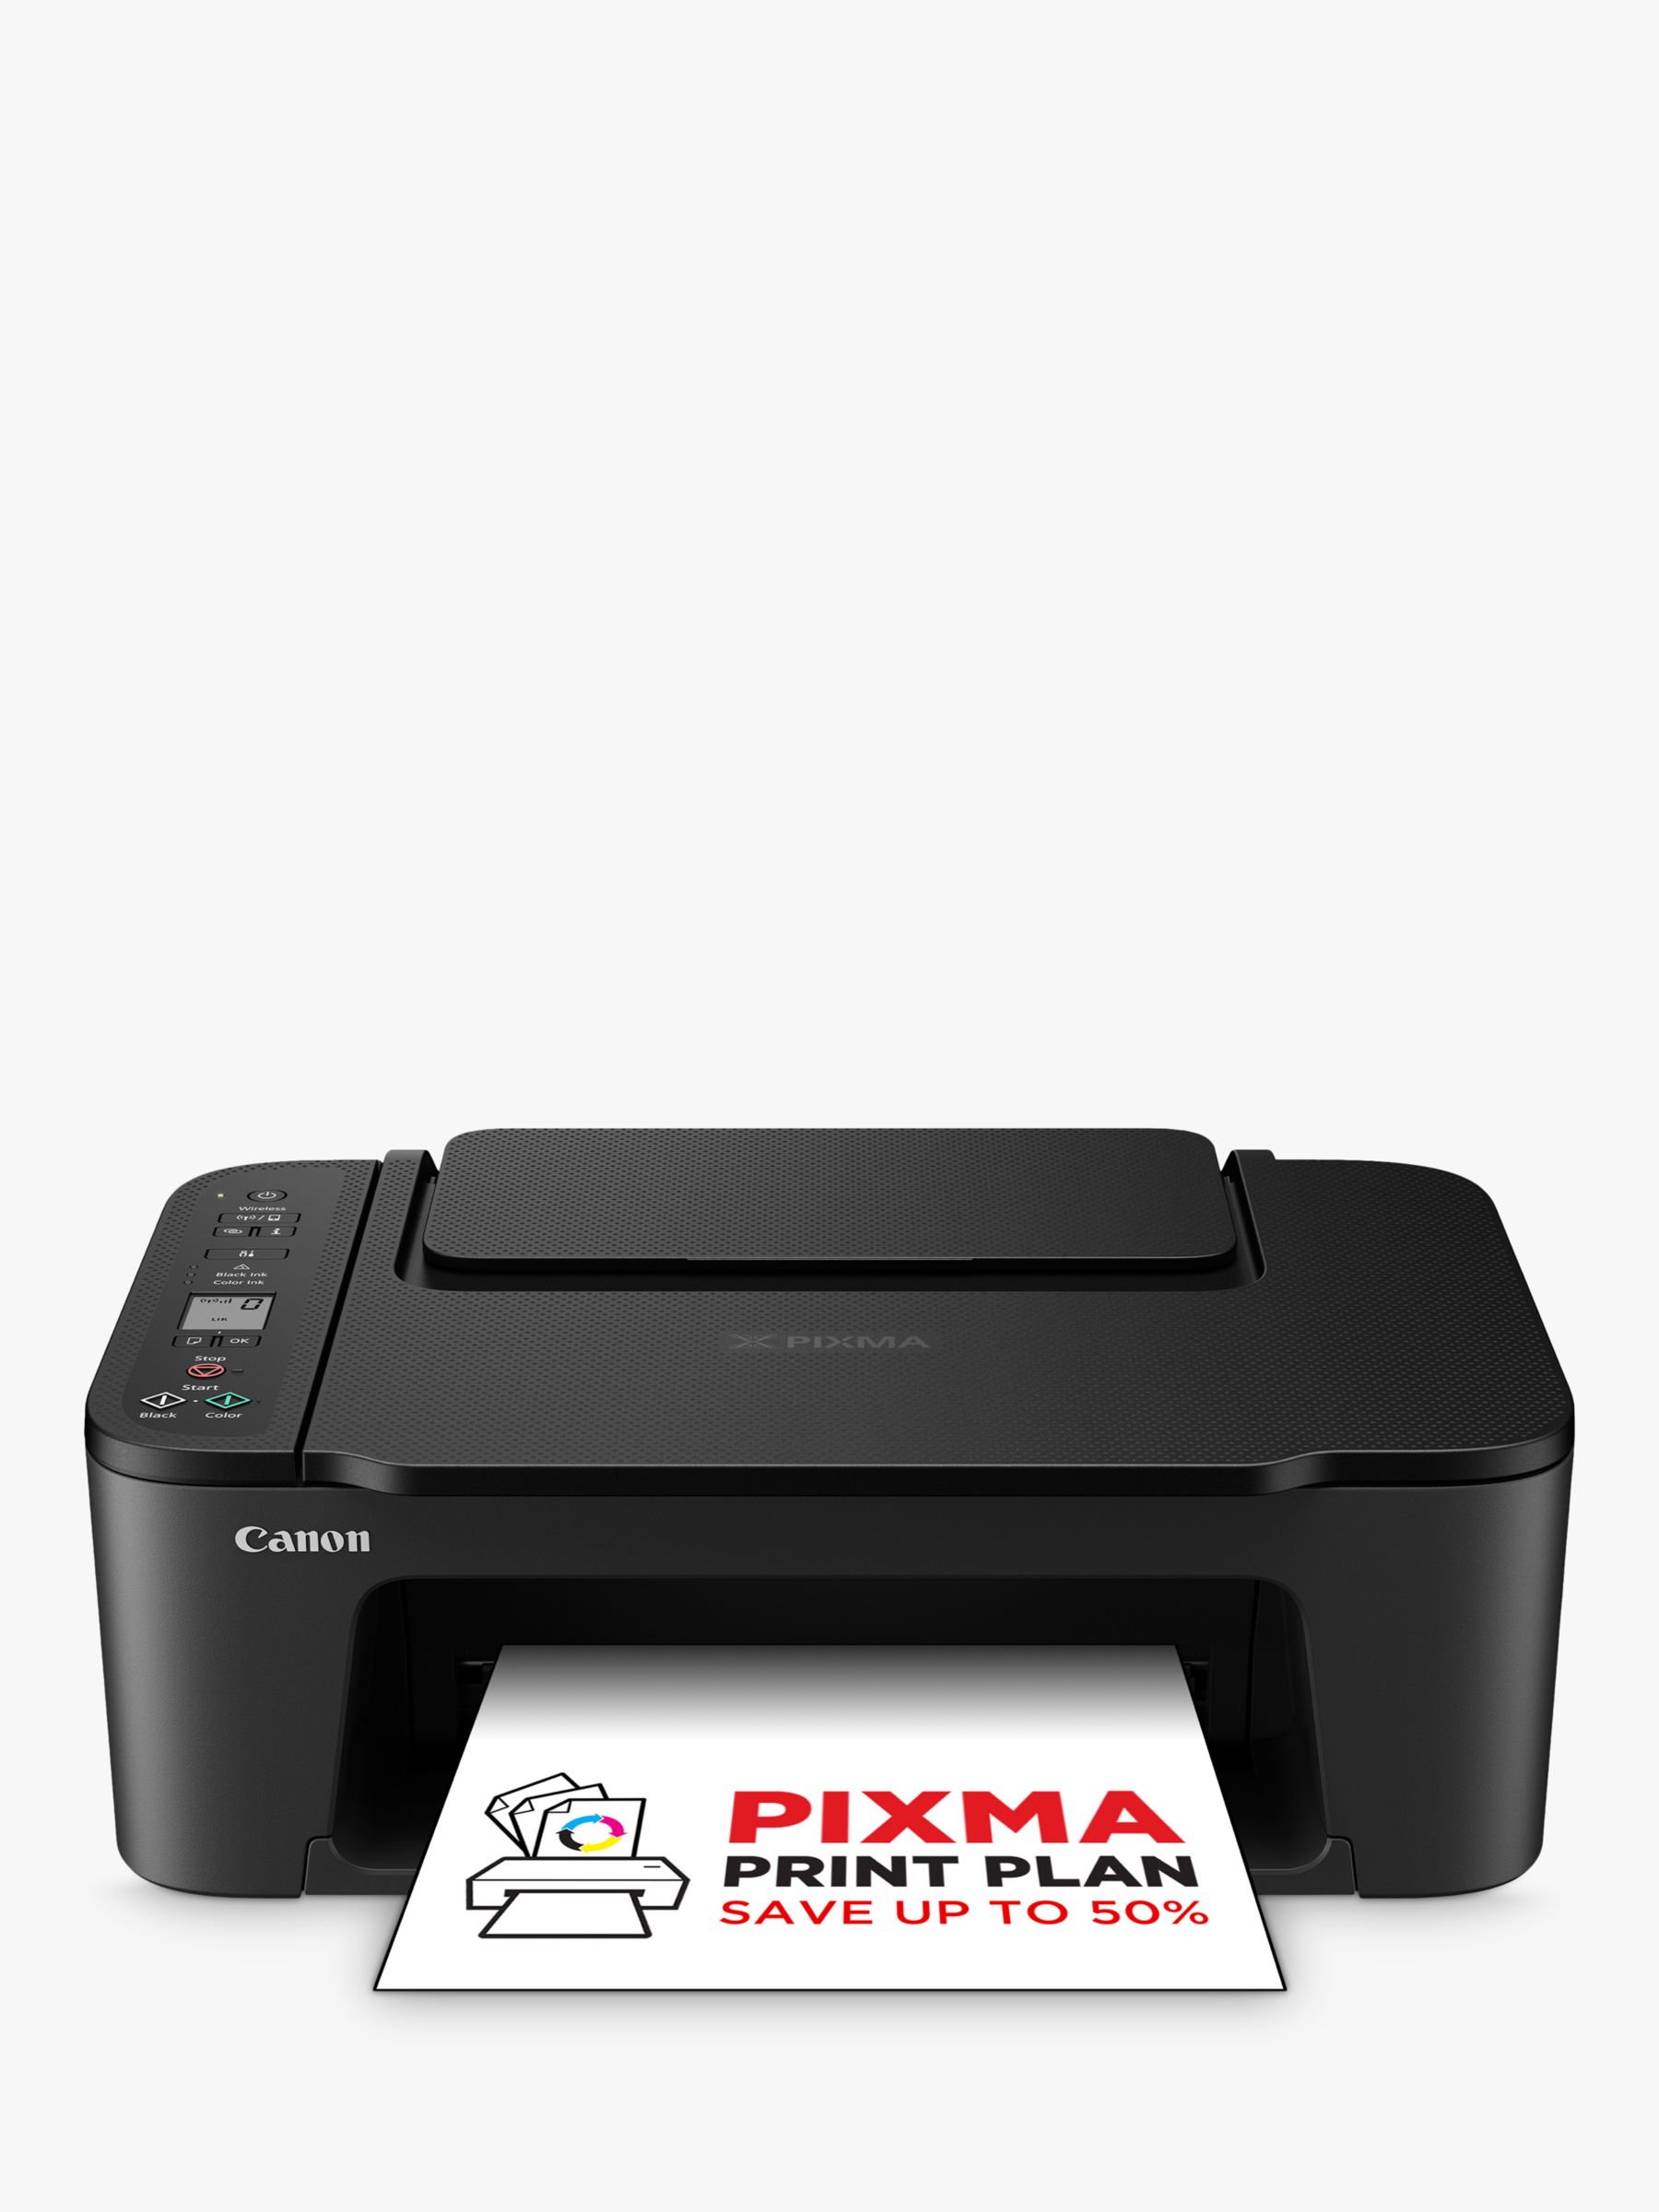 Canon PIXMA TS3550i All-in-One Printer, Black Wi-Fi Wireless